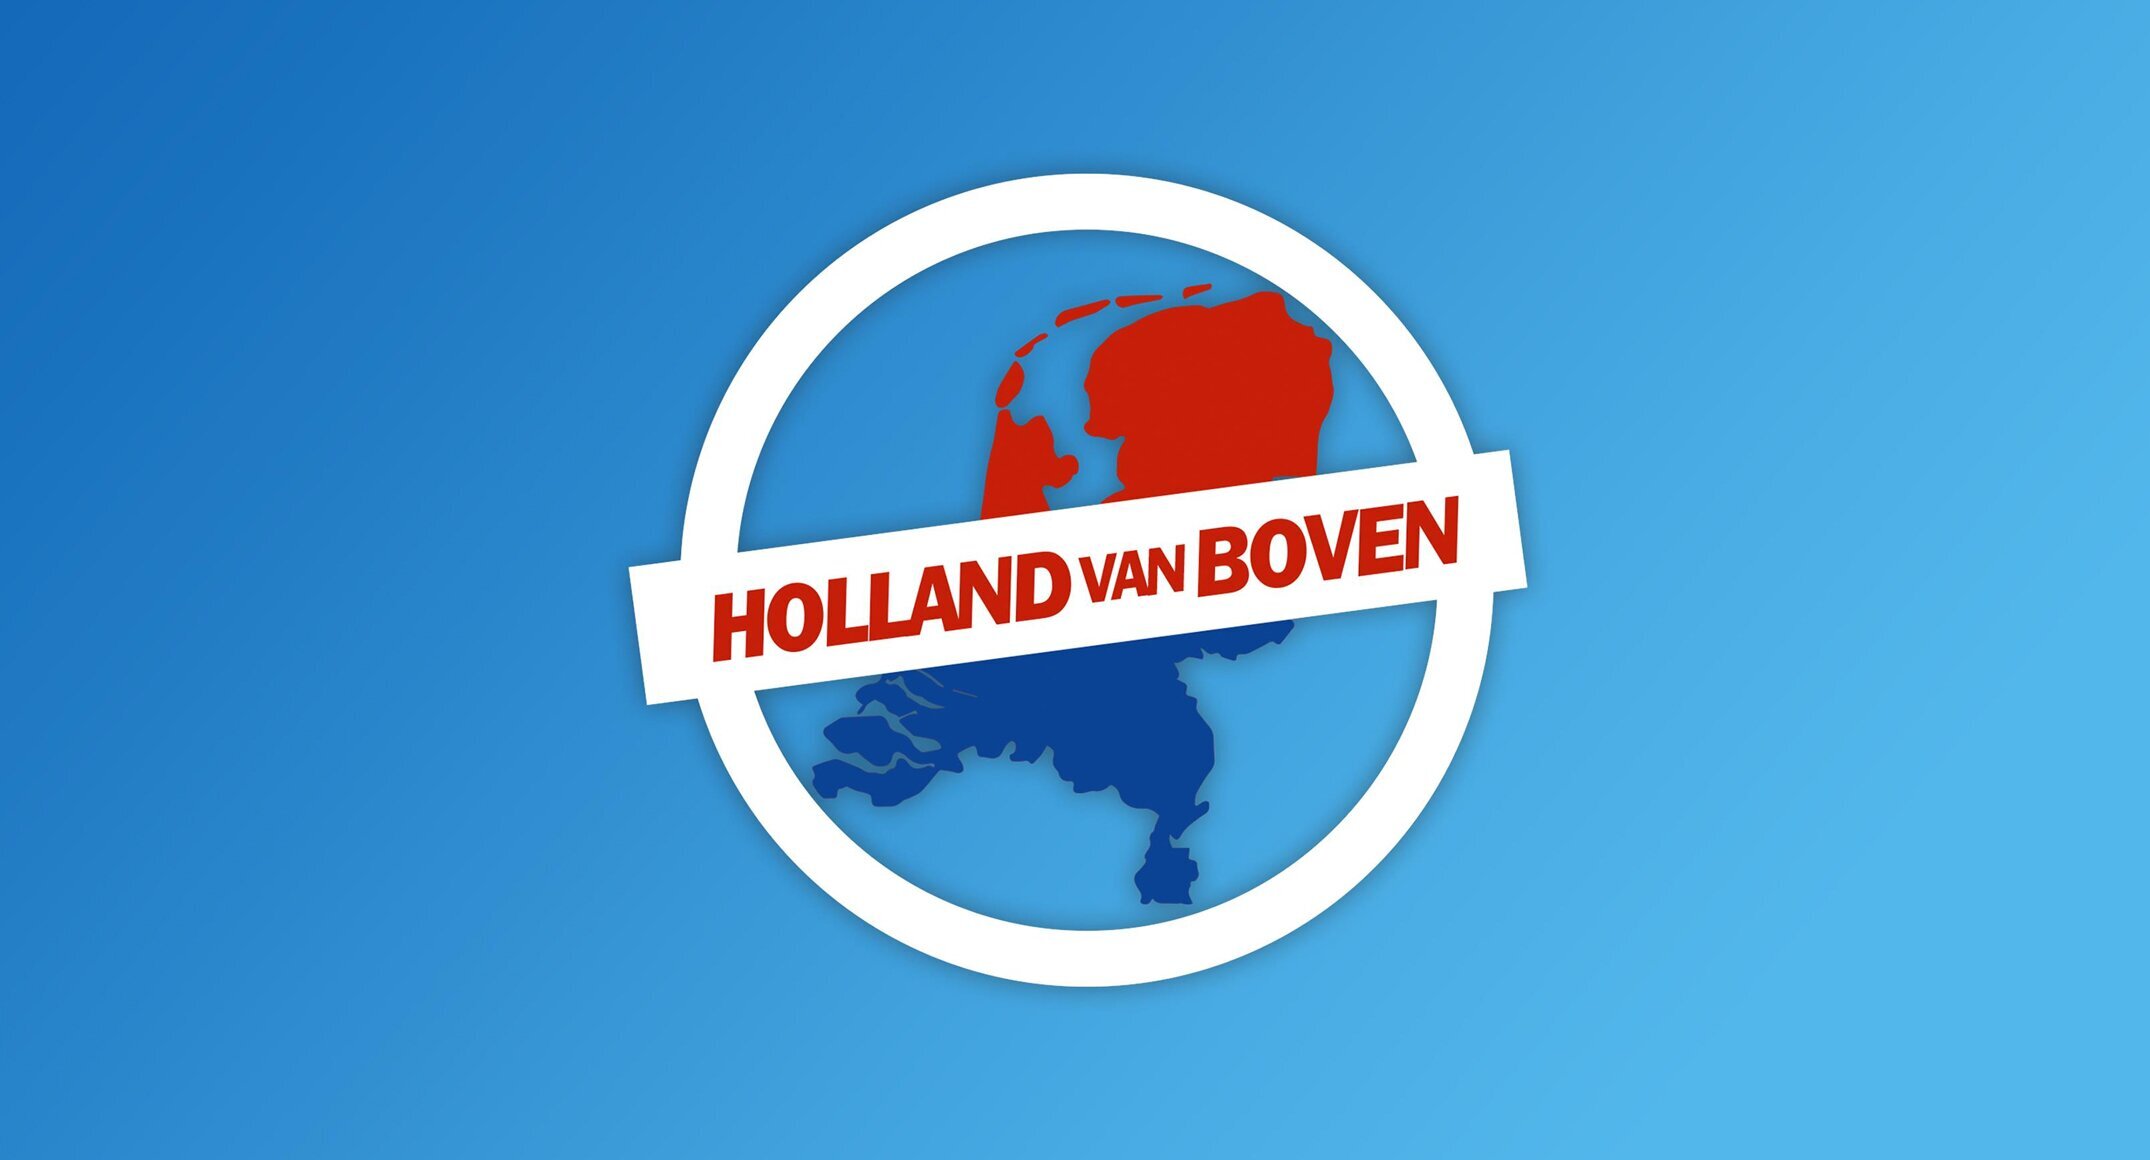 Kijktip: Van Gastel Shoes te zien in het tv-programma "Holland van Boven".